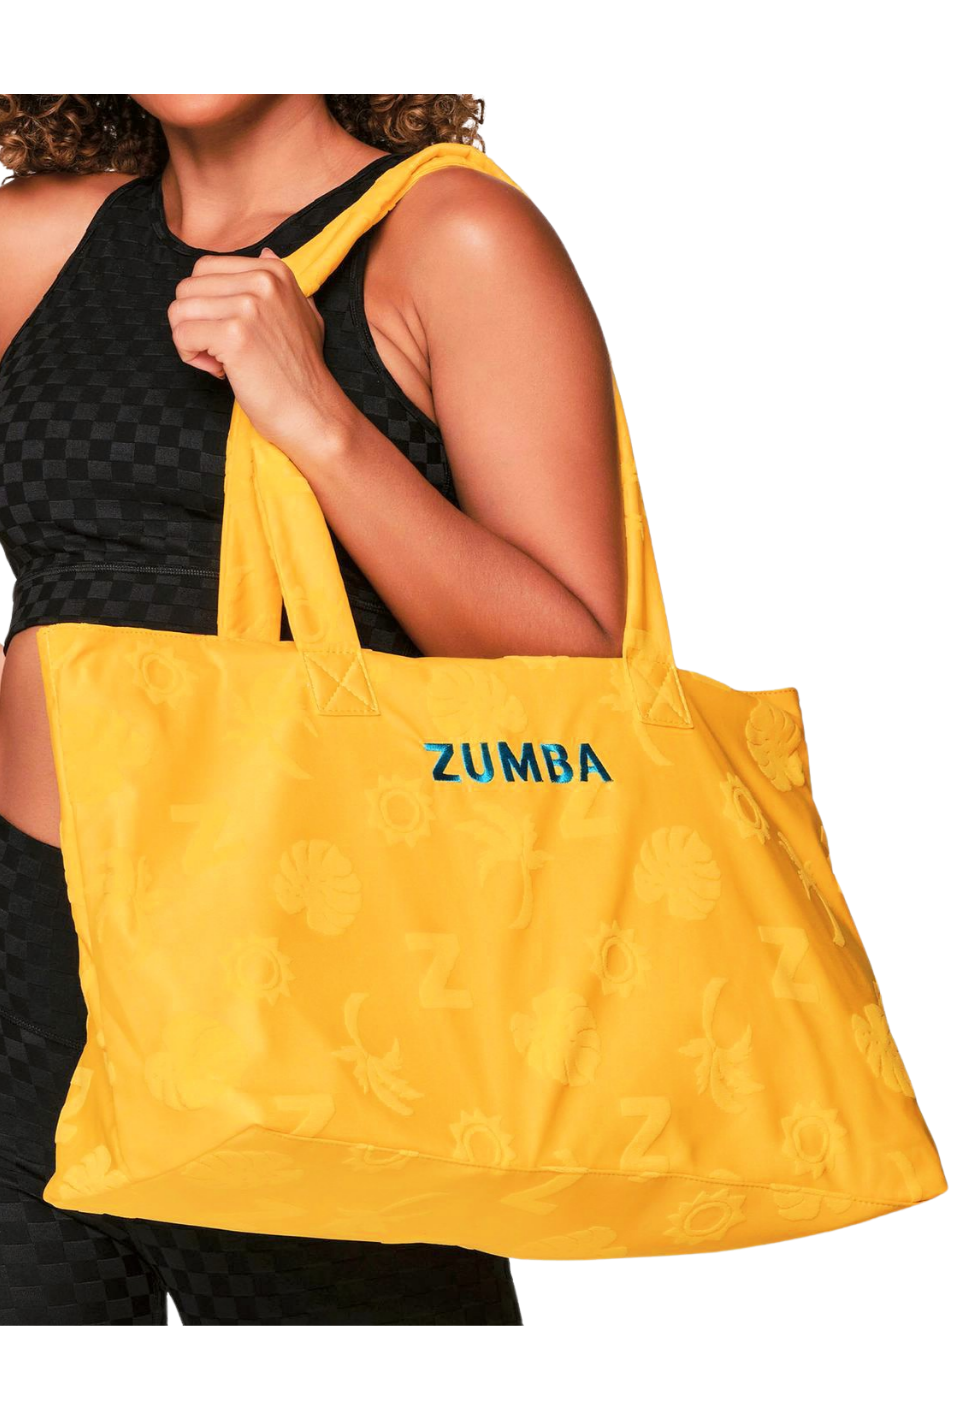 Zumba Vacay Tote Bag (Pre-Order)